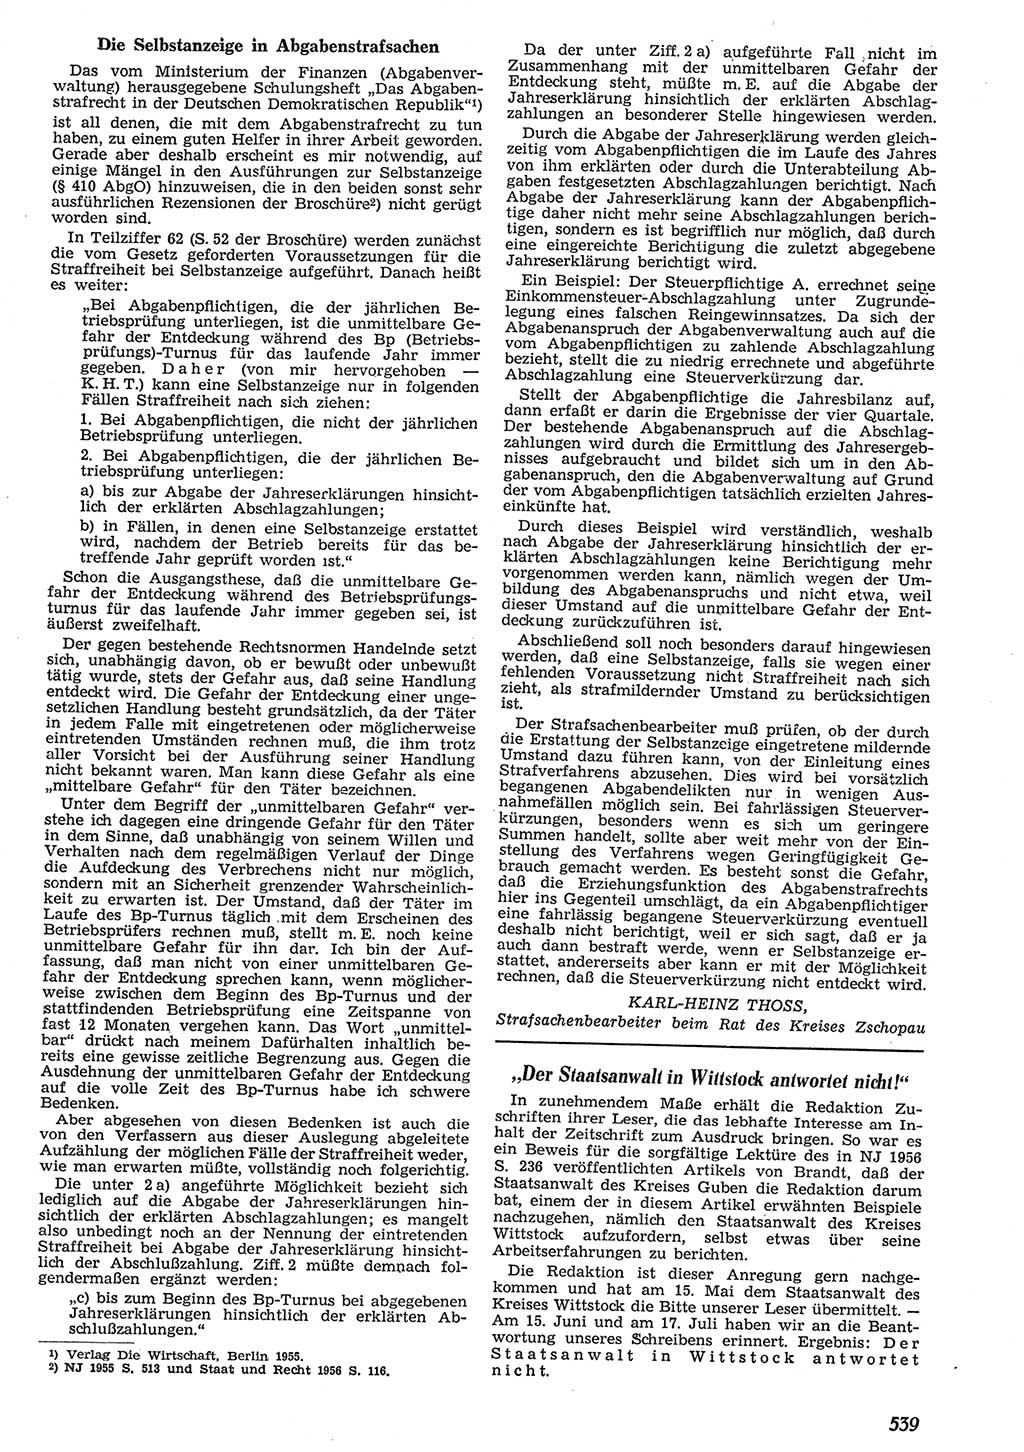 Neue Justiz (NJ), Zeitschrift für Recht und Rechtswissenschaft [Deutsche Demokratische Republik (DDR)], 10. Jahrgang 1956, Seite 539 (NJ DDR 1956, S. 539)